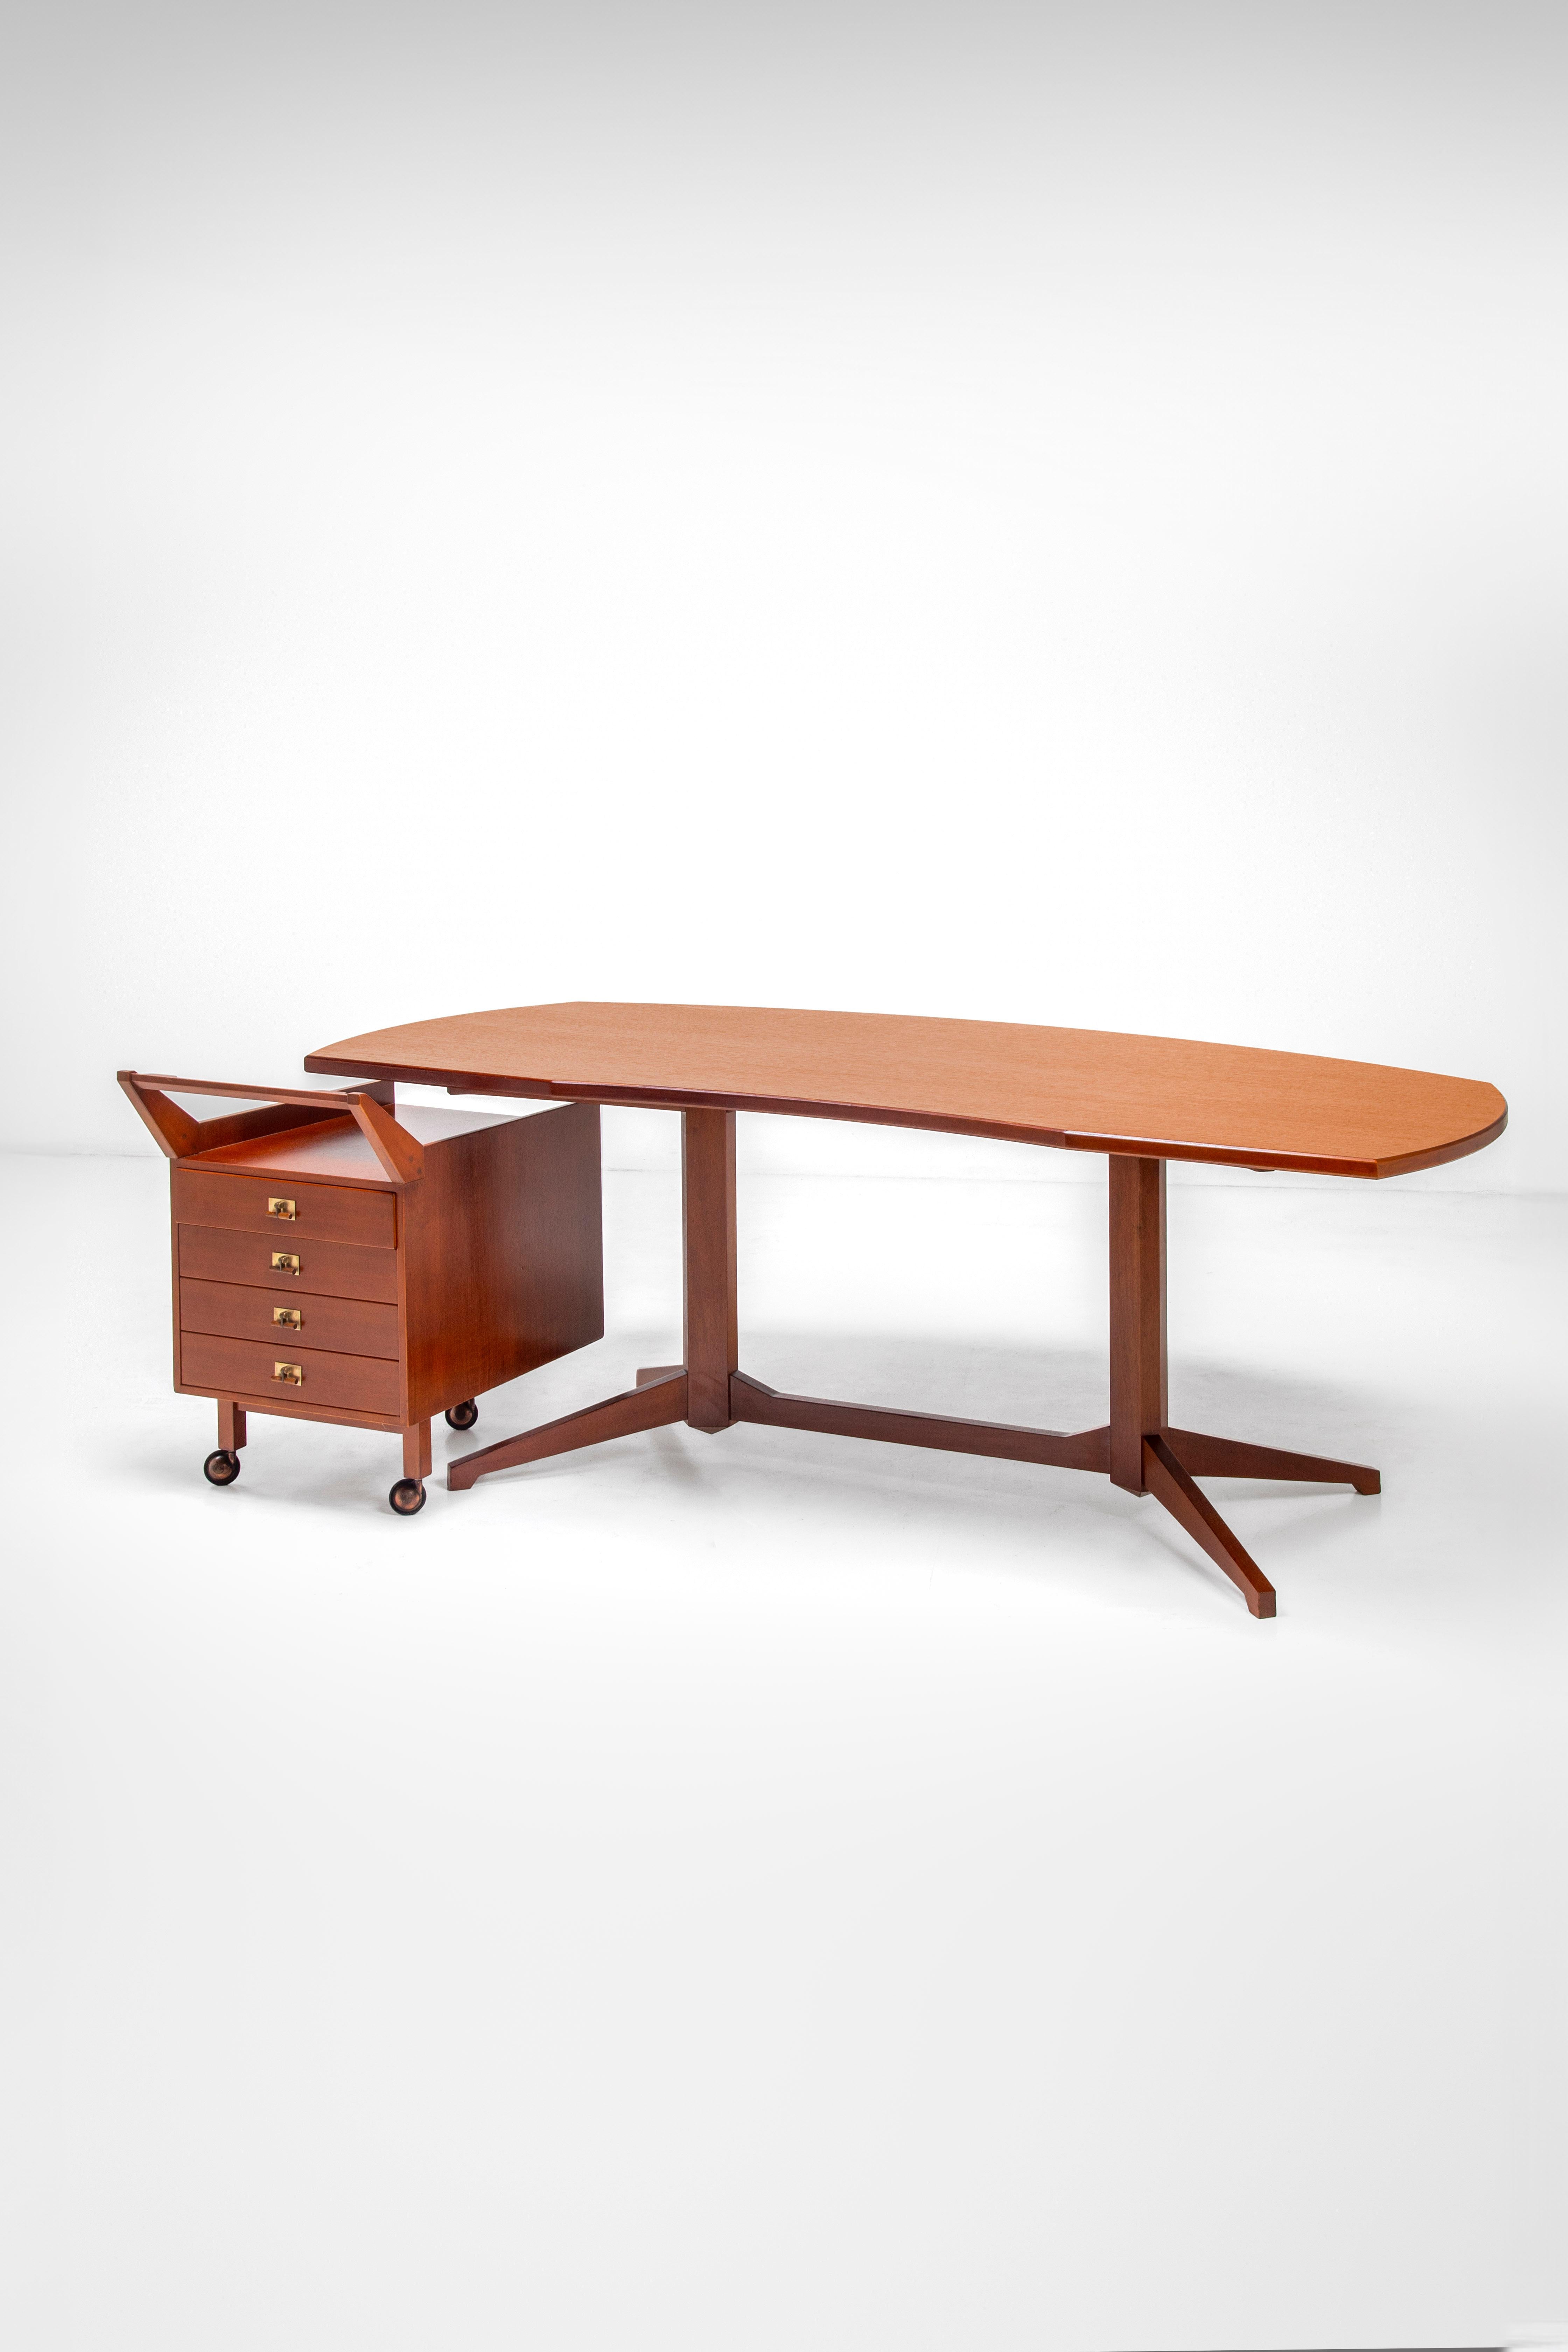 Dieses Schreibtischset mit beweglichem Schubladenblock ist ein klassisches rationalistisches Design von Franco Albini, das sich durch klare Formen und Linien auszeichnet. Der Schreibtisch ist funktional und hat eine ergonomische und zugleich